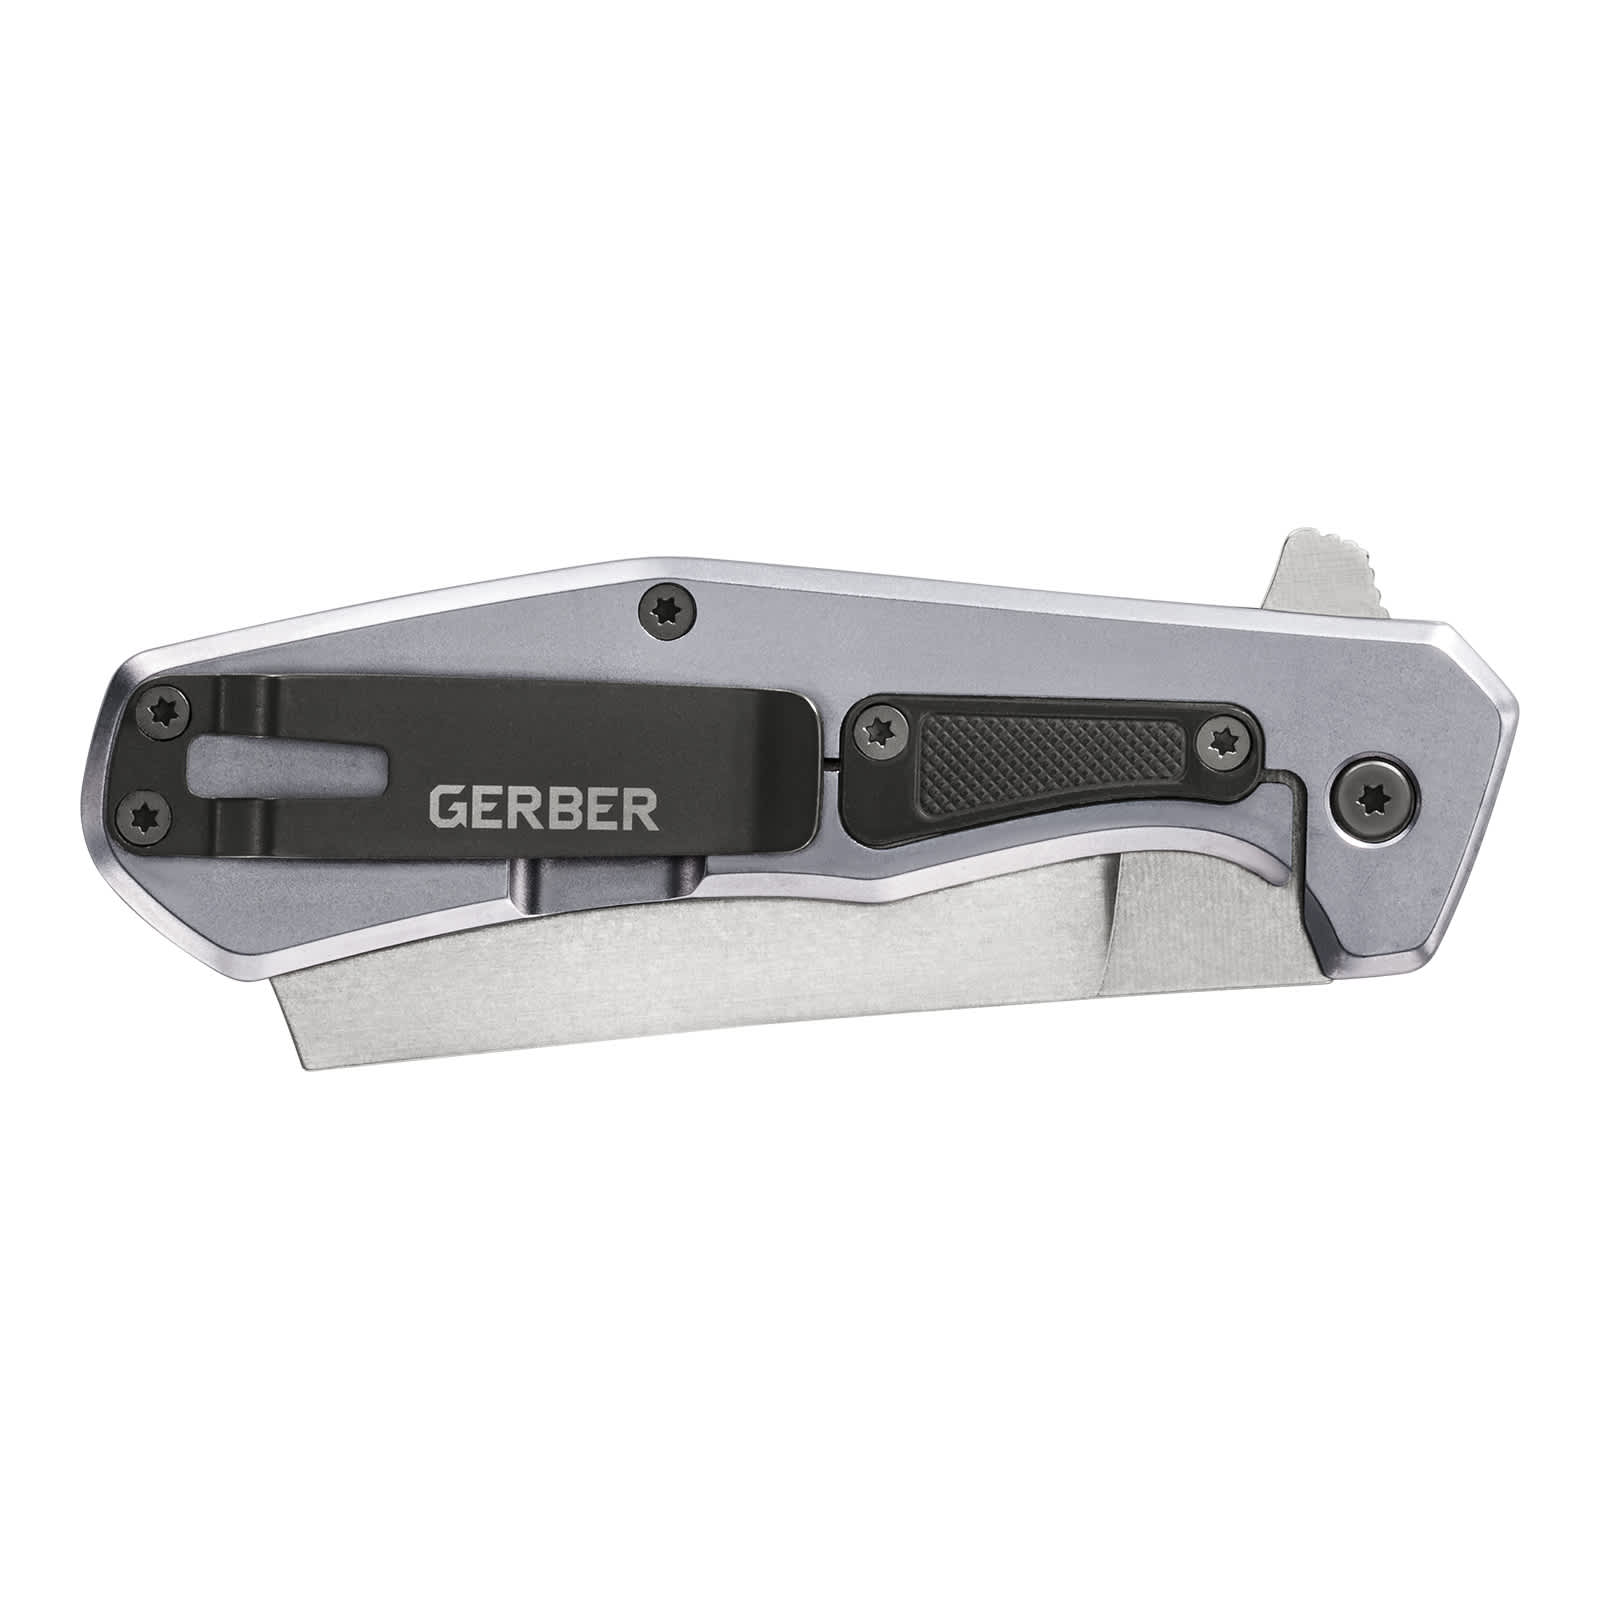 Gerber® Asada Folding Knife